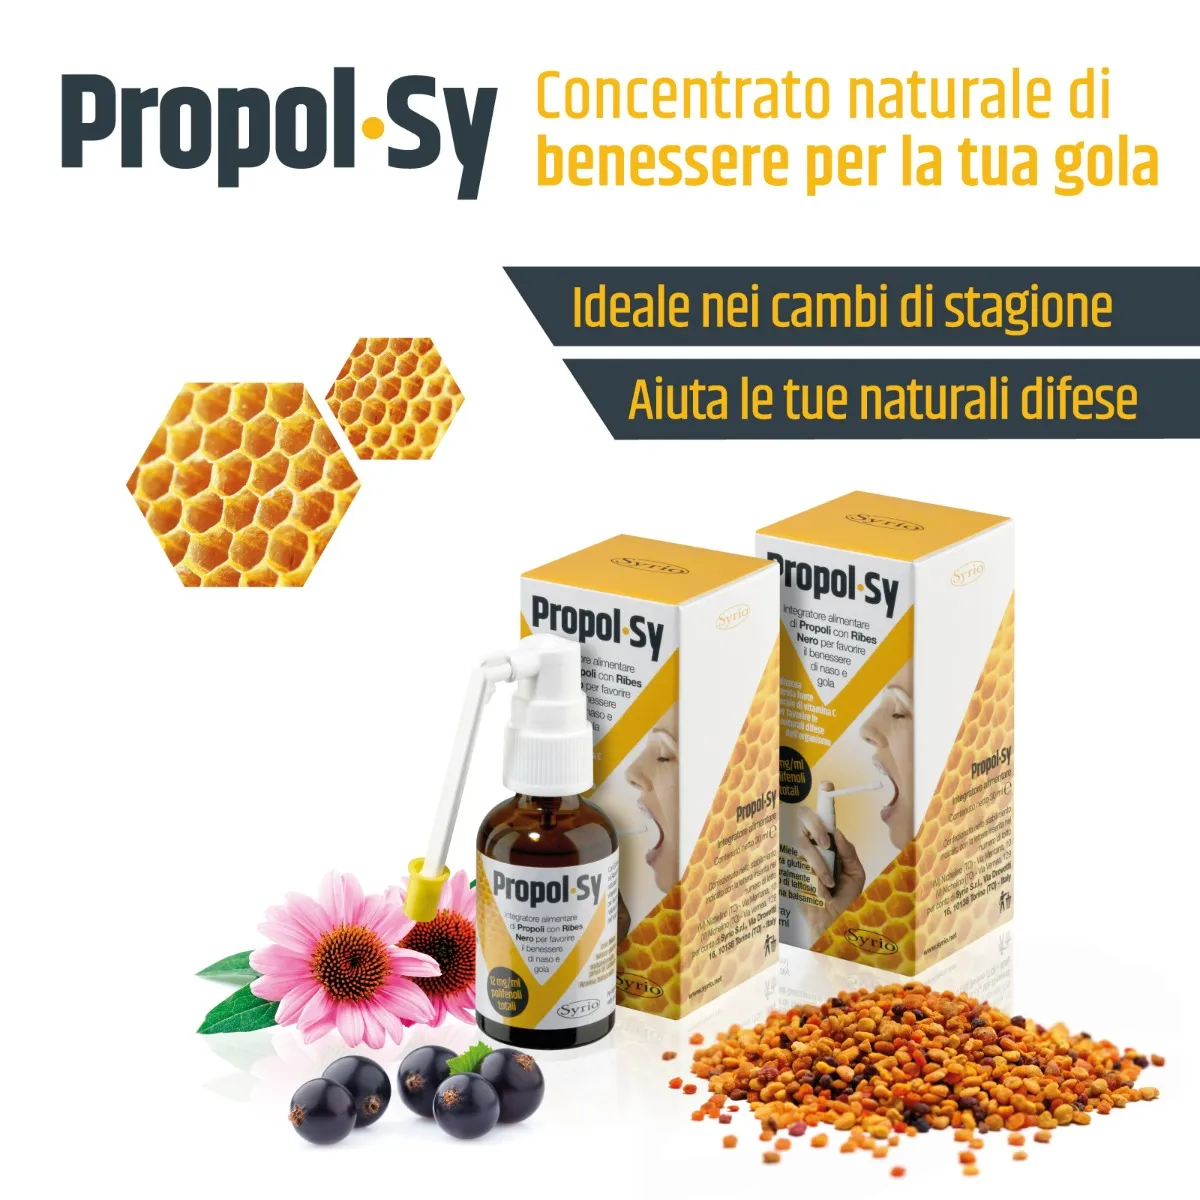 Propol-Sy 30 ml Favorisce le Naturali Difese dell'Organismo